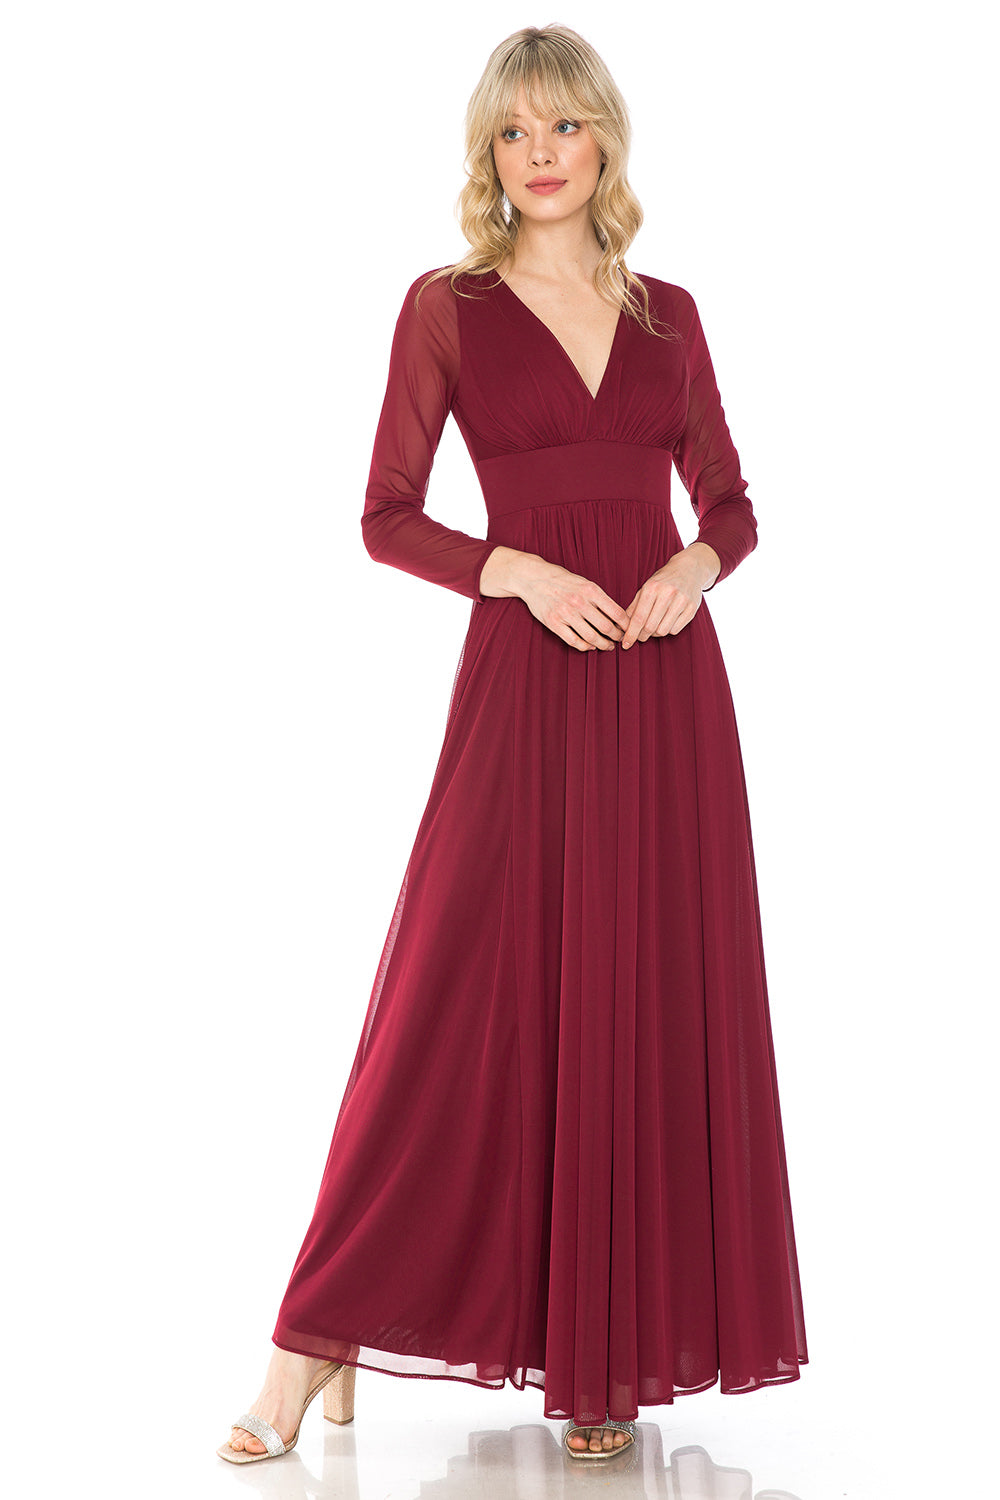 La Merchandise Simple Long Sleeve Modest Bridesmaids Dress- LN5234 - BURGUNDY - LA Merchandise